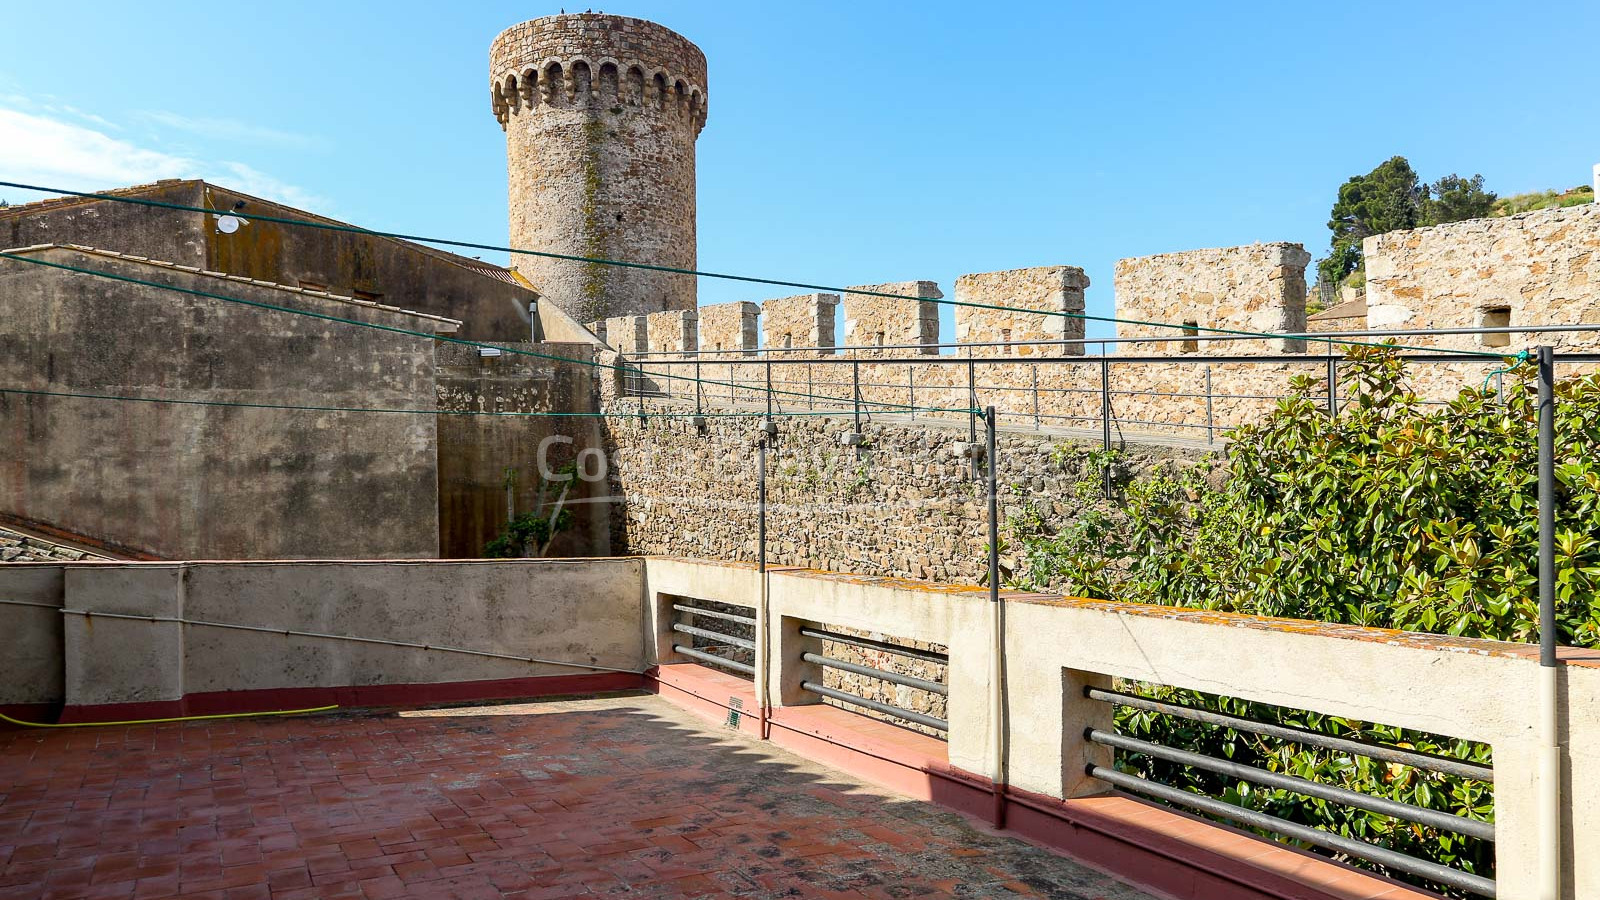 Propiedad única en venta junto a la muralla de Tossa de Mar, en pleno centro histórico medieval